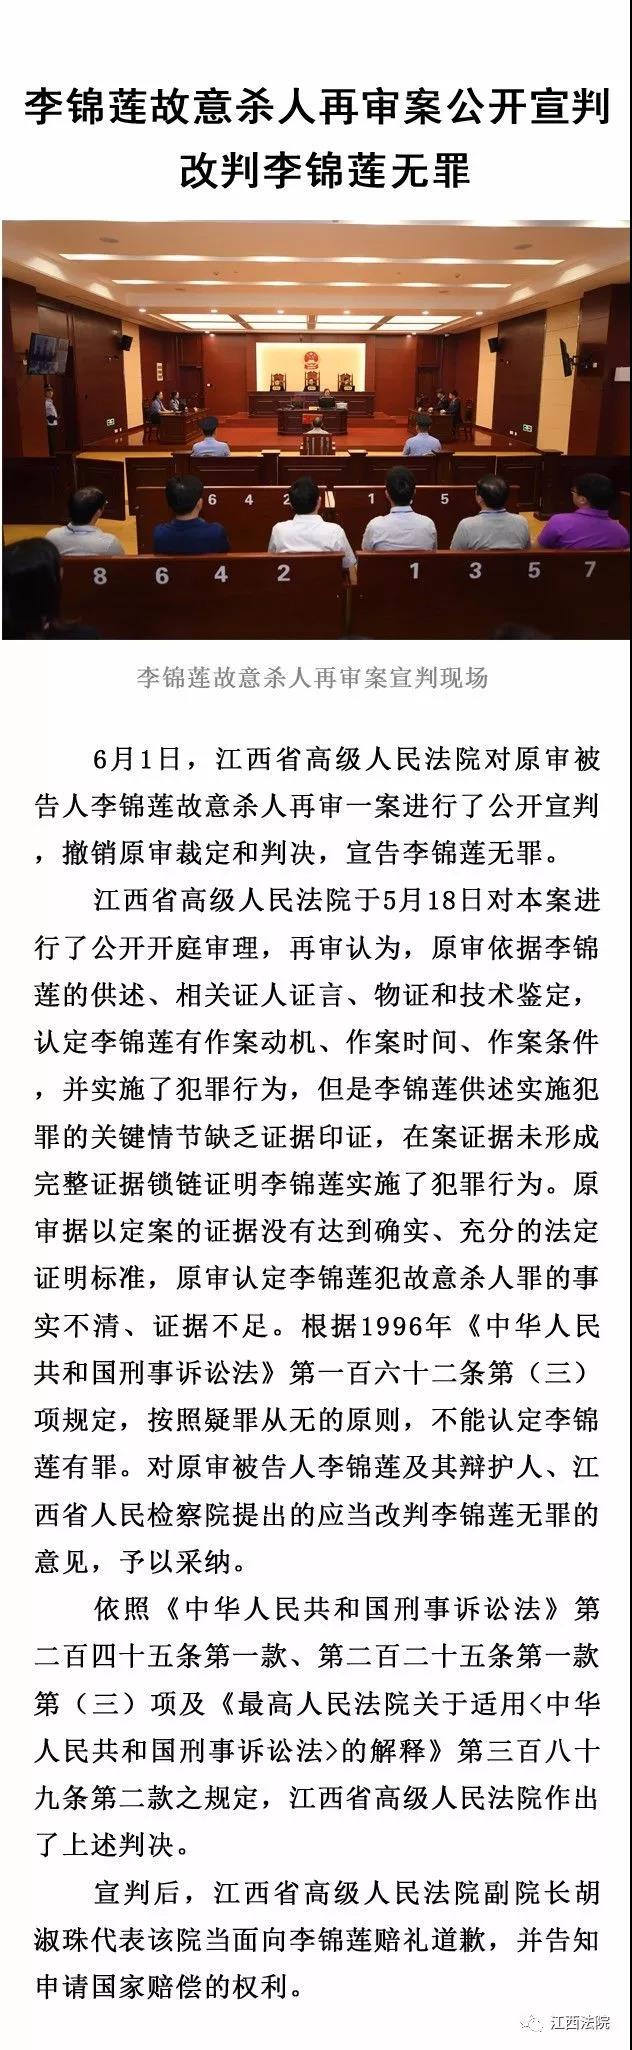 李锦莲被改判无罪 江西高院副院长当面赔礼道歉